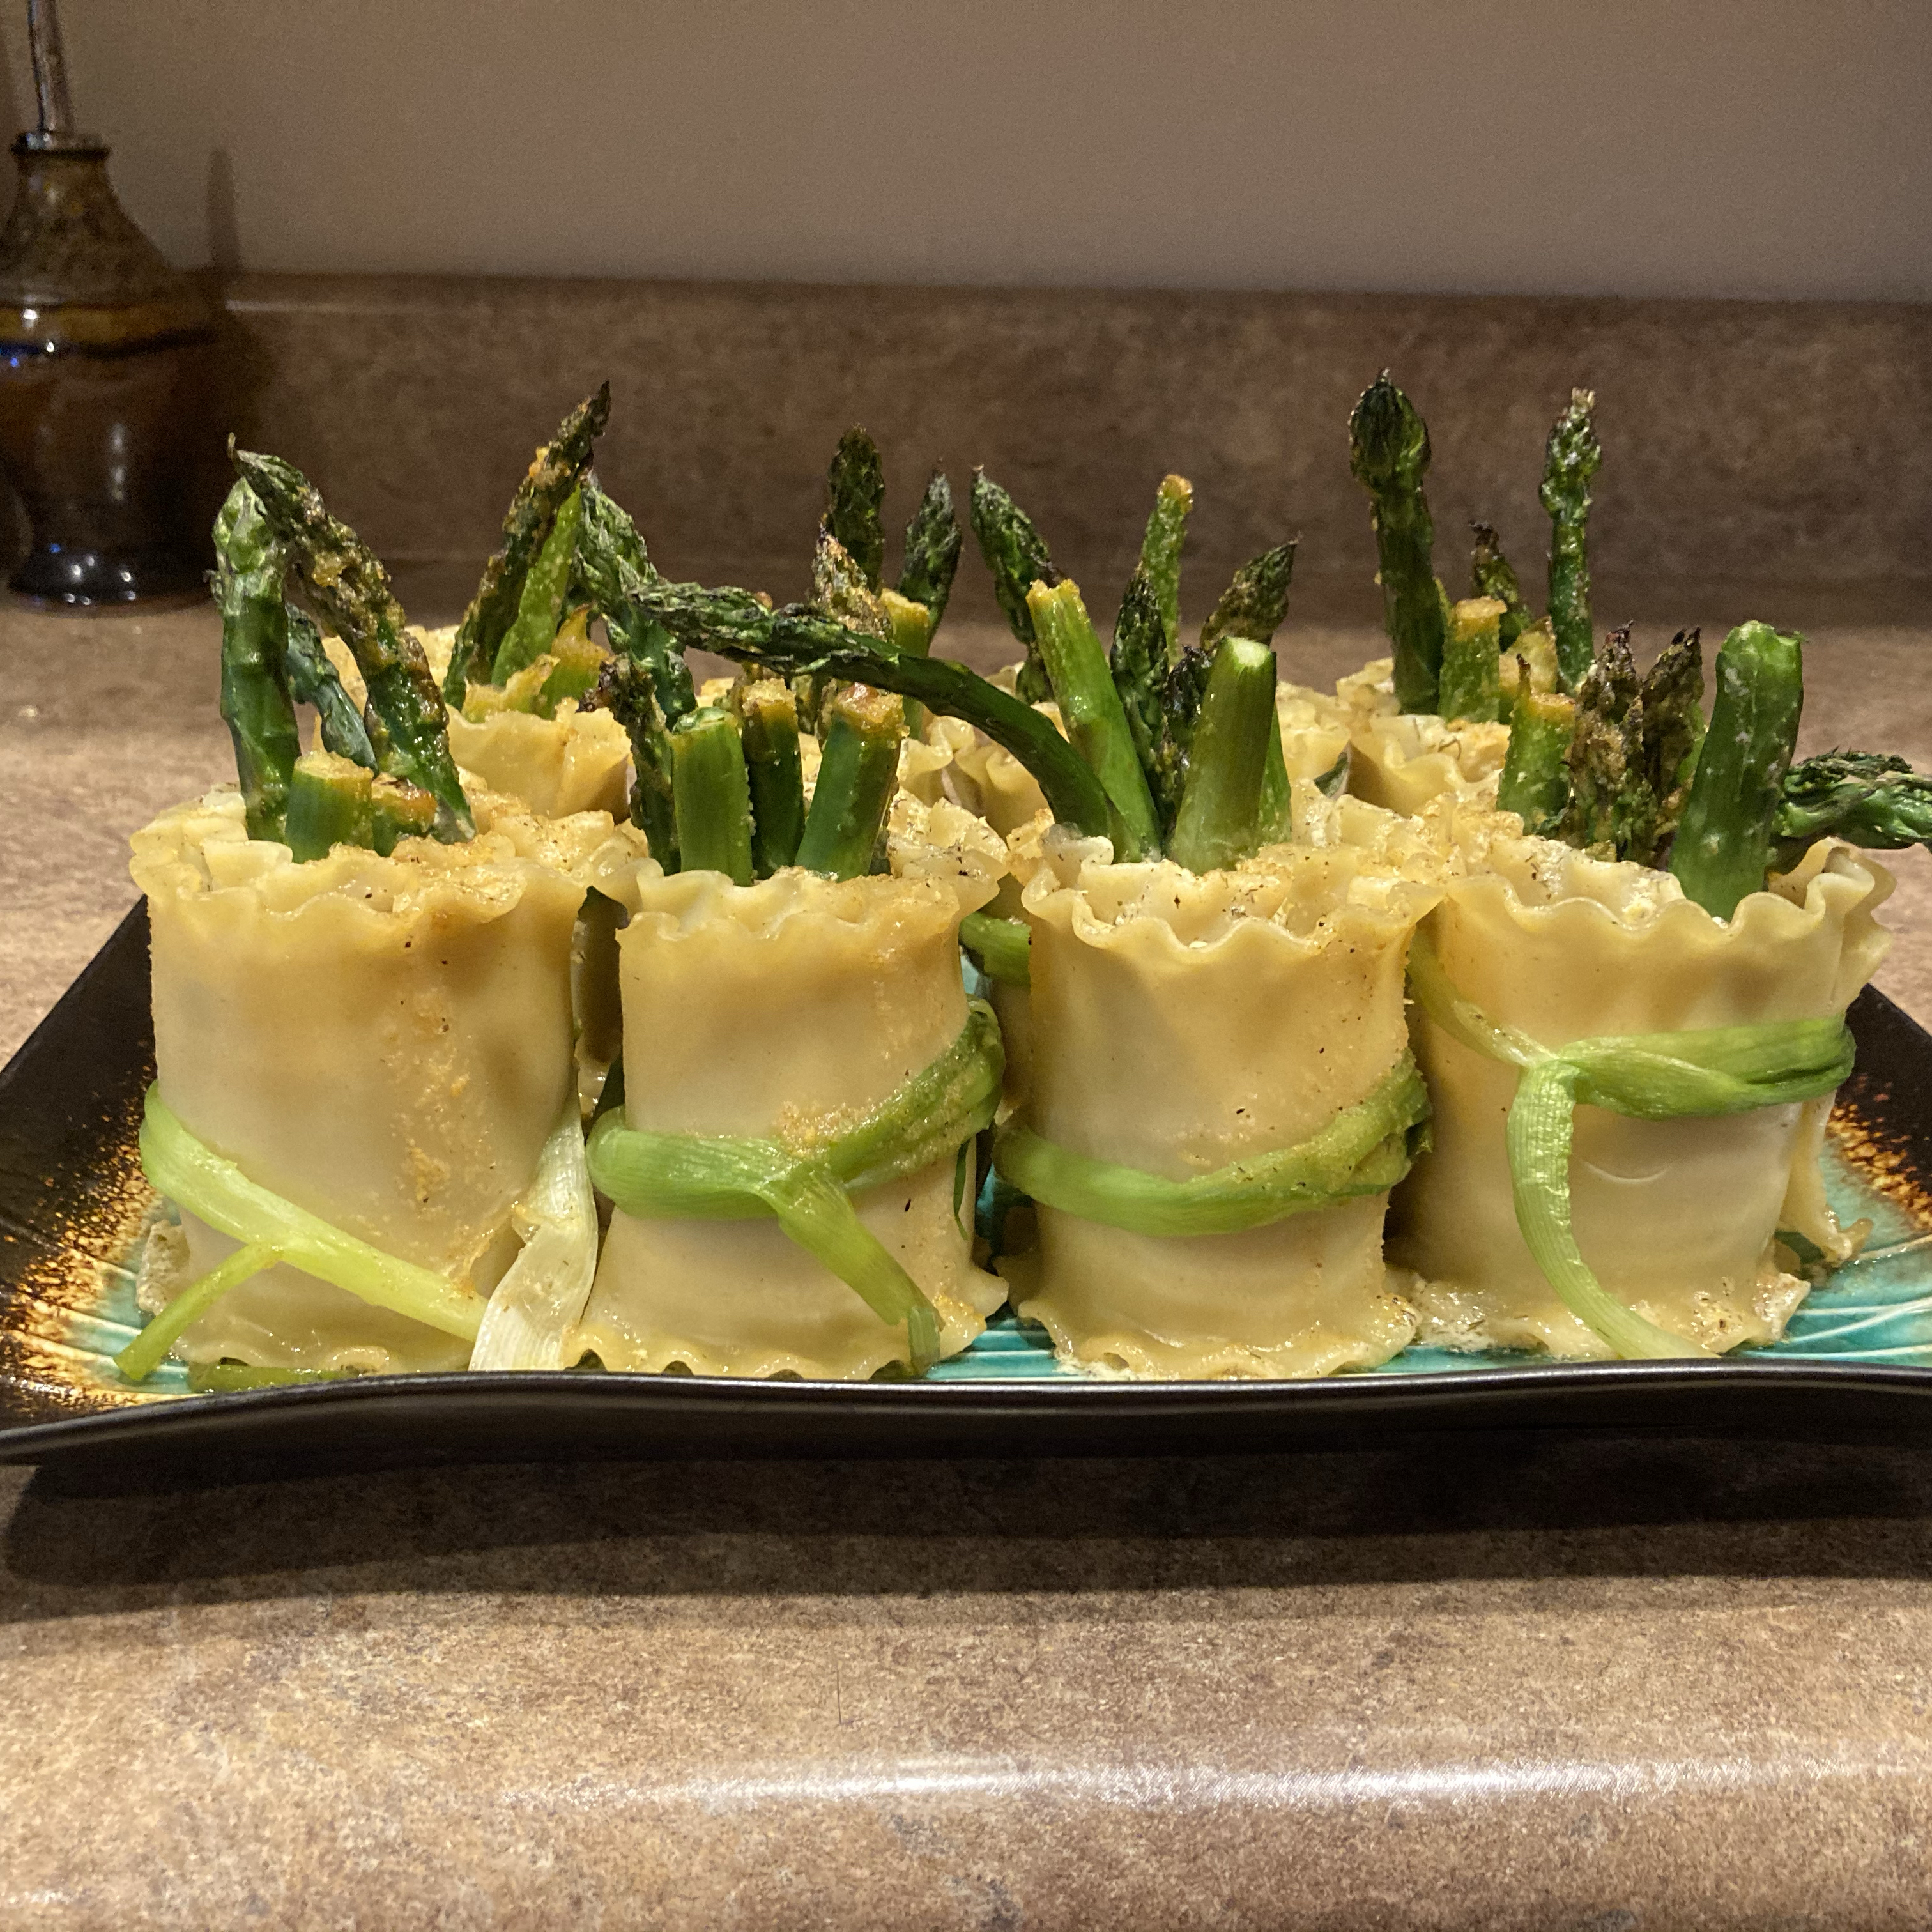 Asparagus and Smoked Salmon Bundles with Meyer Lemon Sauce